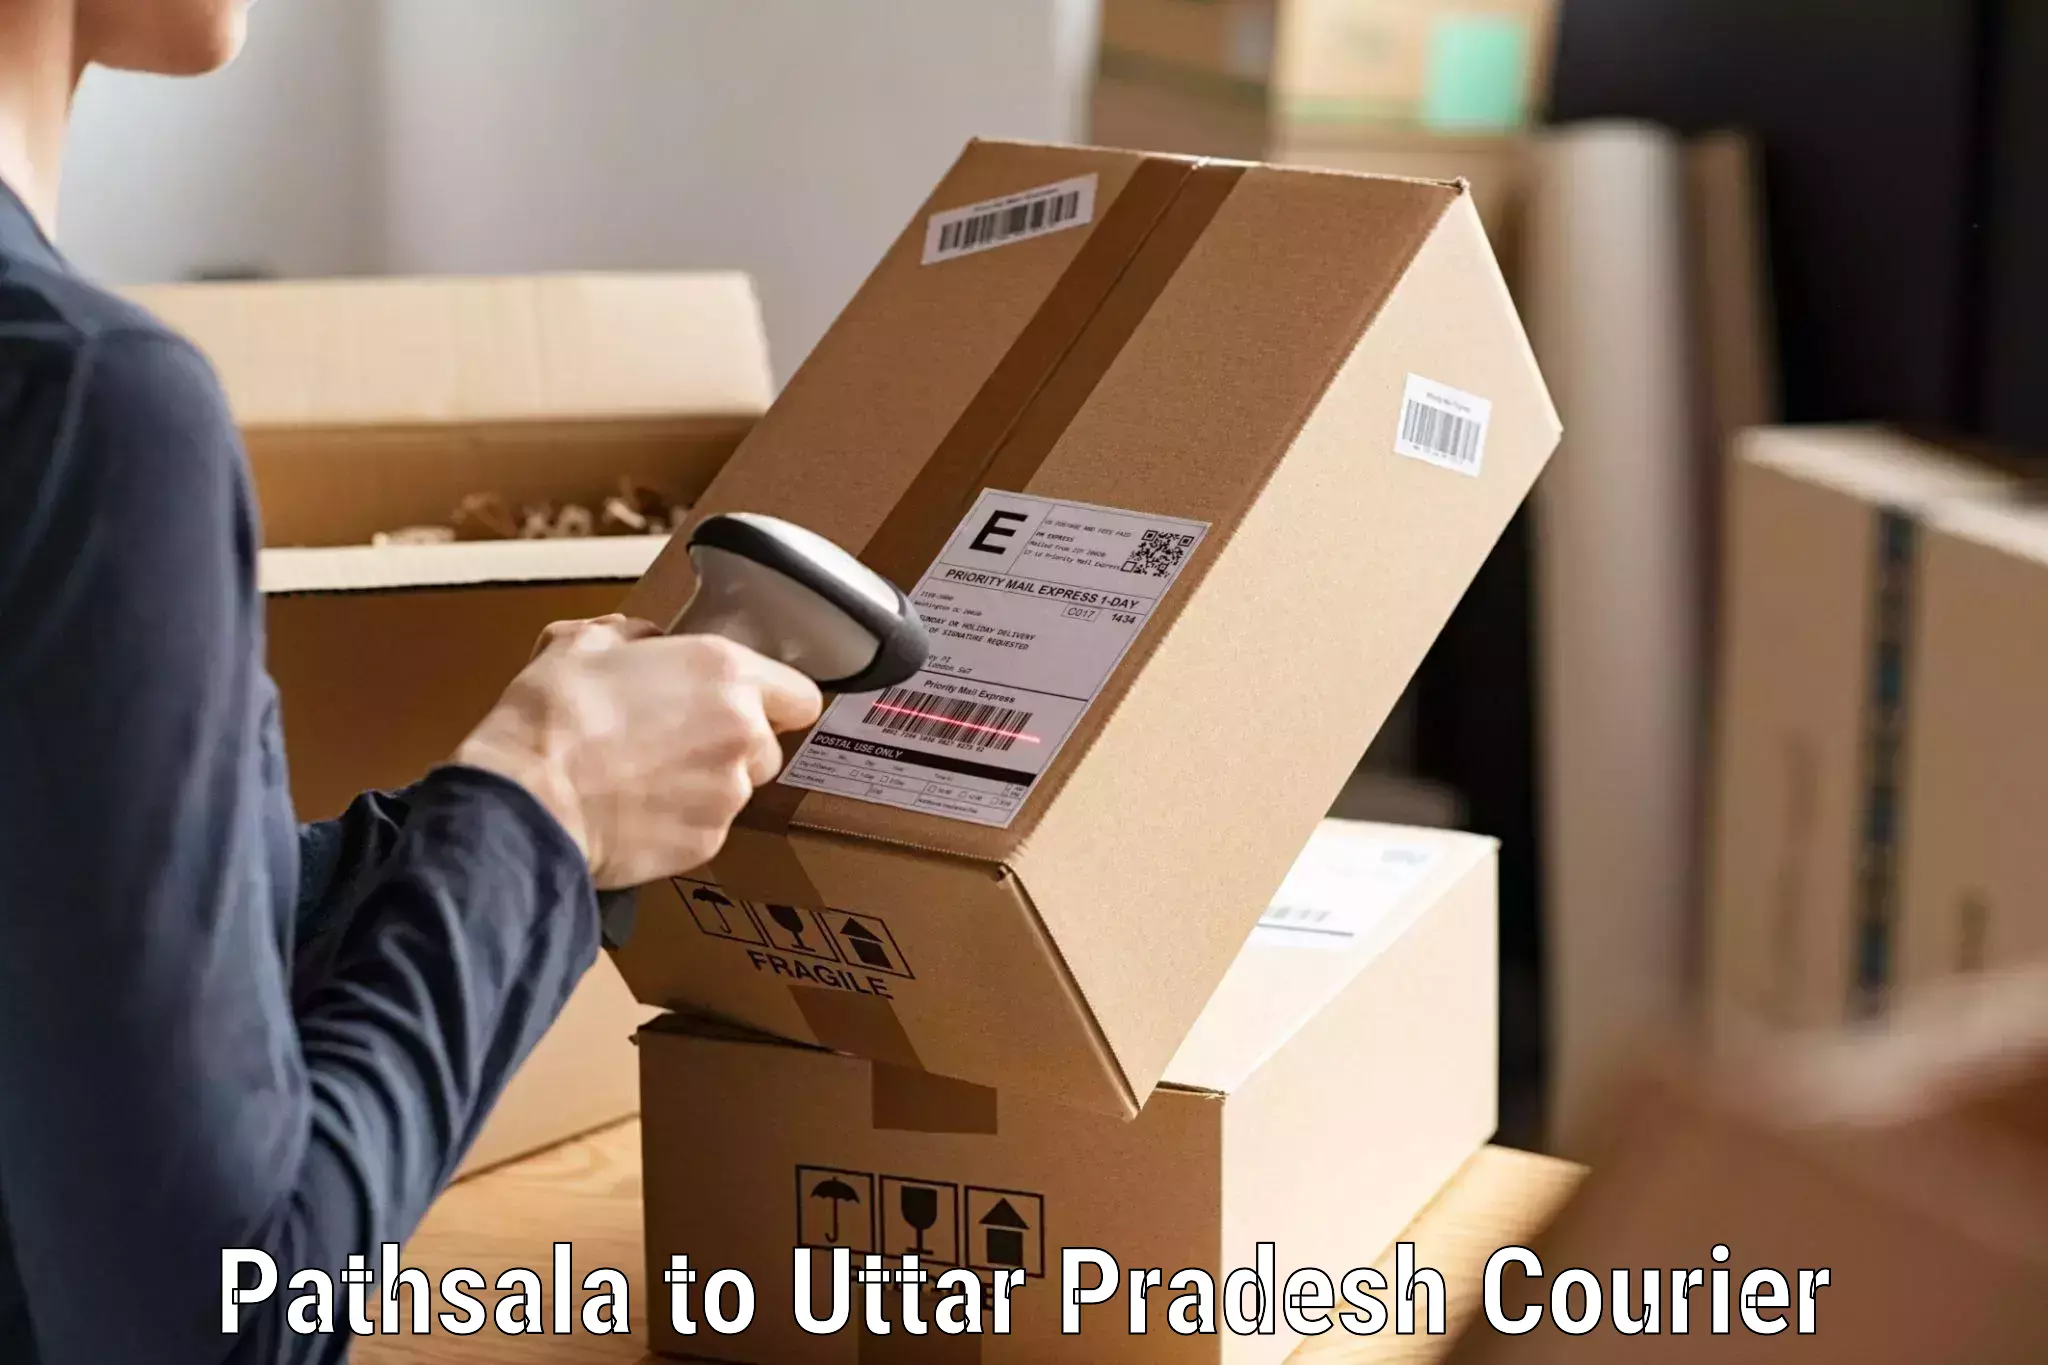 Global logistics network Pathsala to Babrala